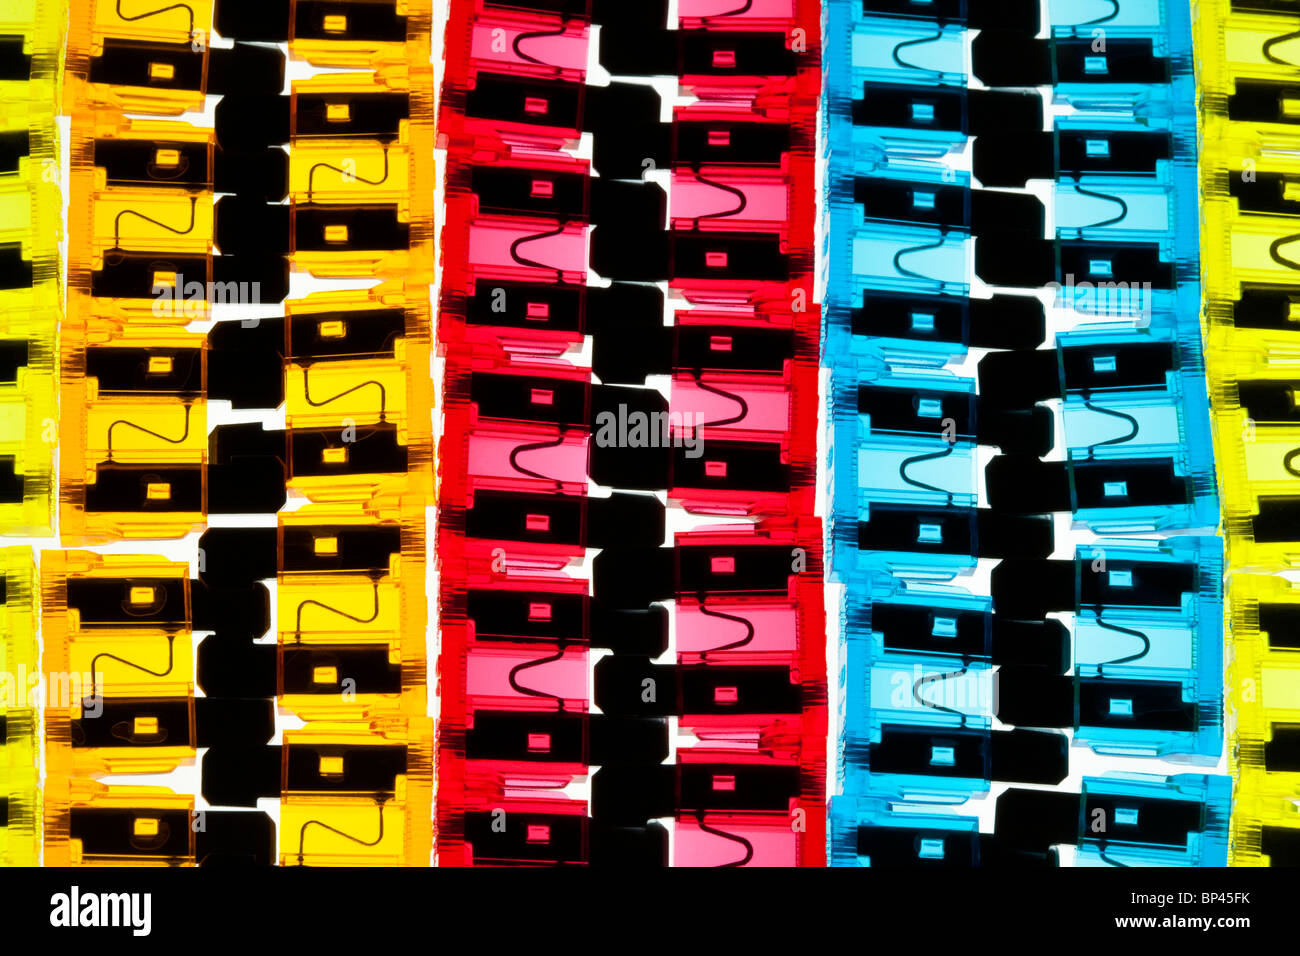 Kfz elektrische Klinge-Sicherungen auf einem beleuchteten Hintergrund angeordnet. Stockfoto